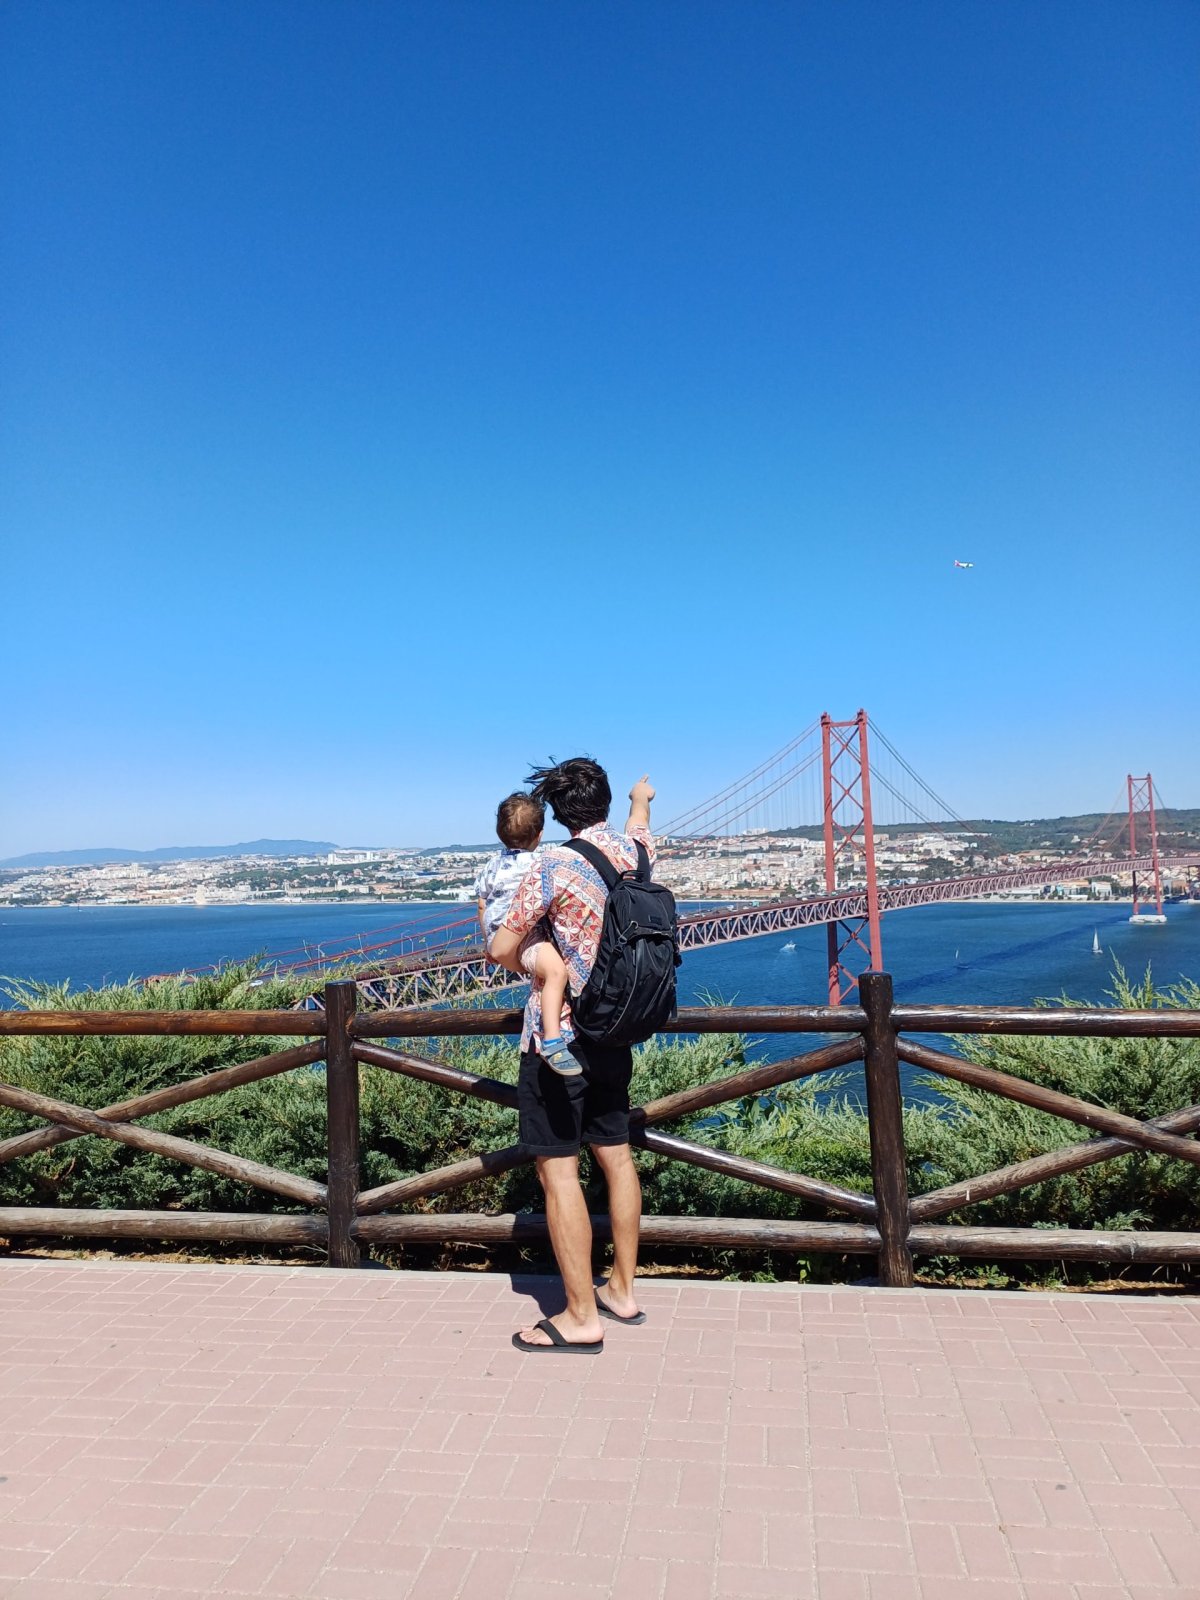 Výhled na lisabonský "Golden Gate"